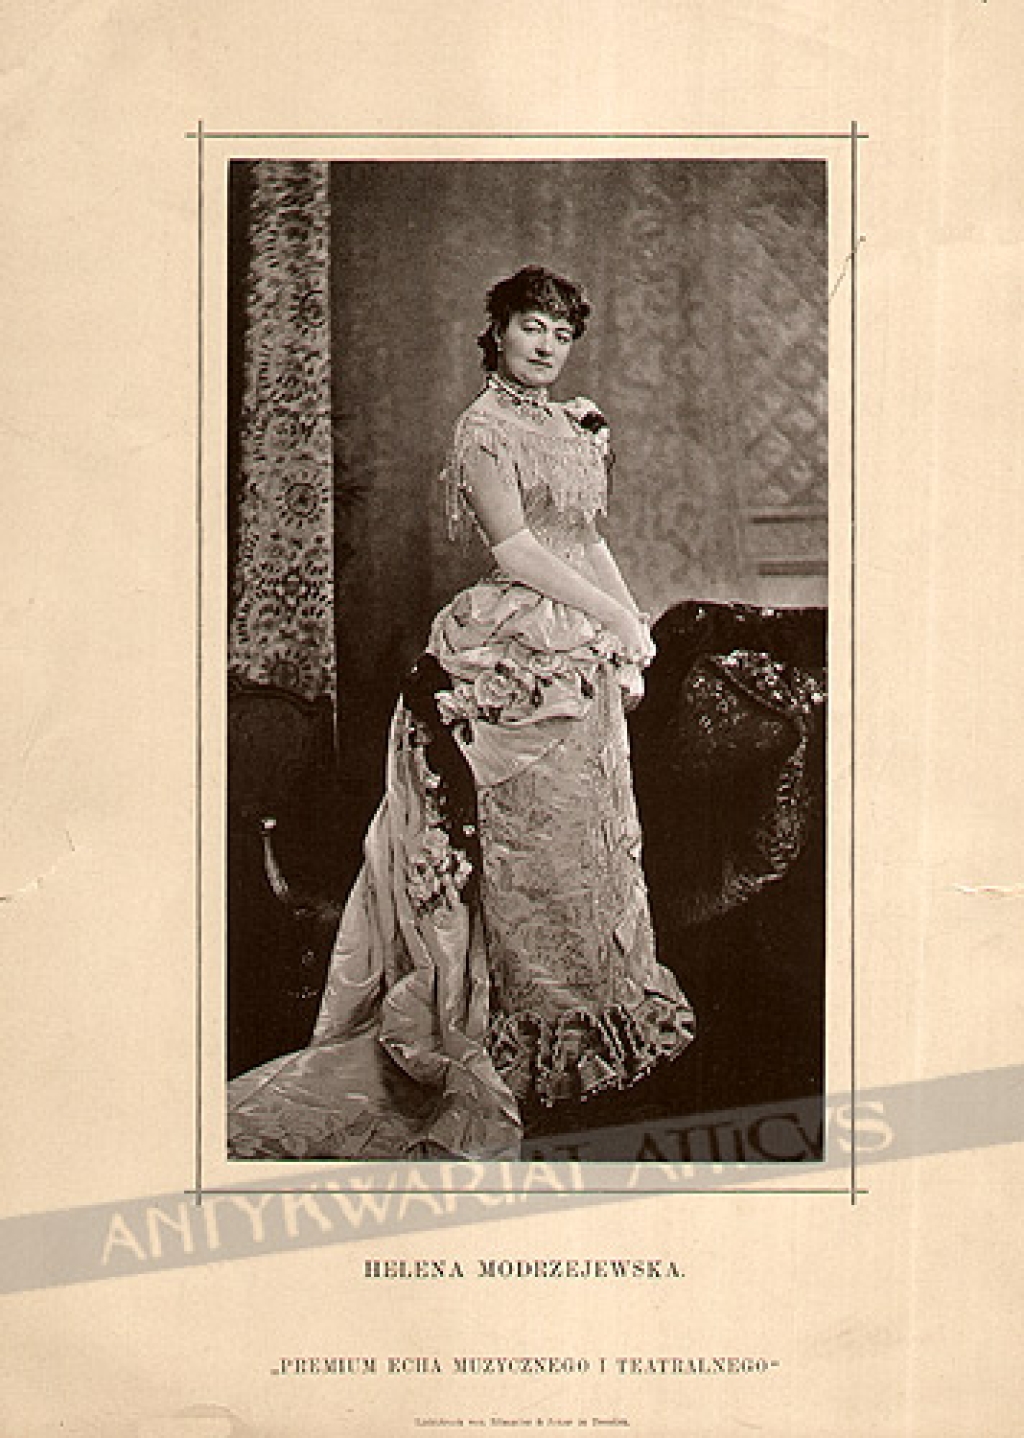 [światłodruk, ok.1890] Helena Modrzejewska